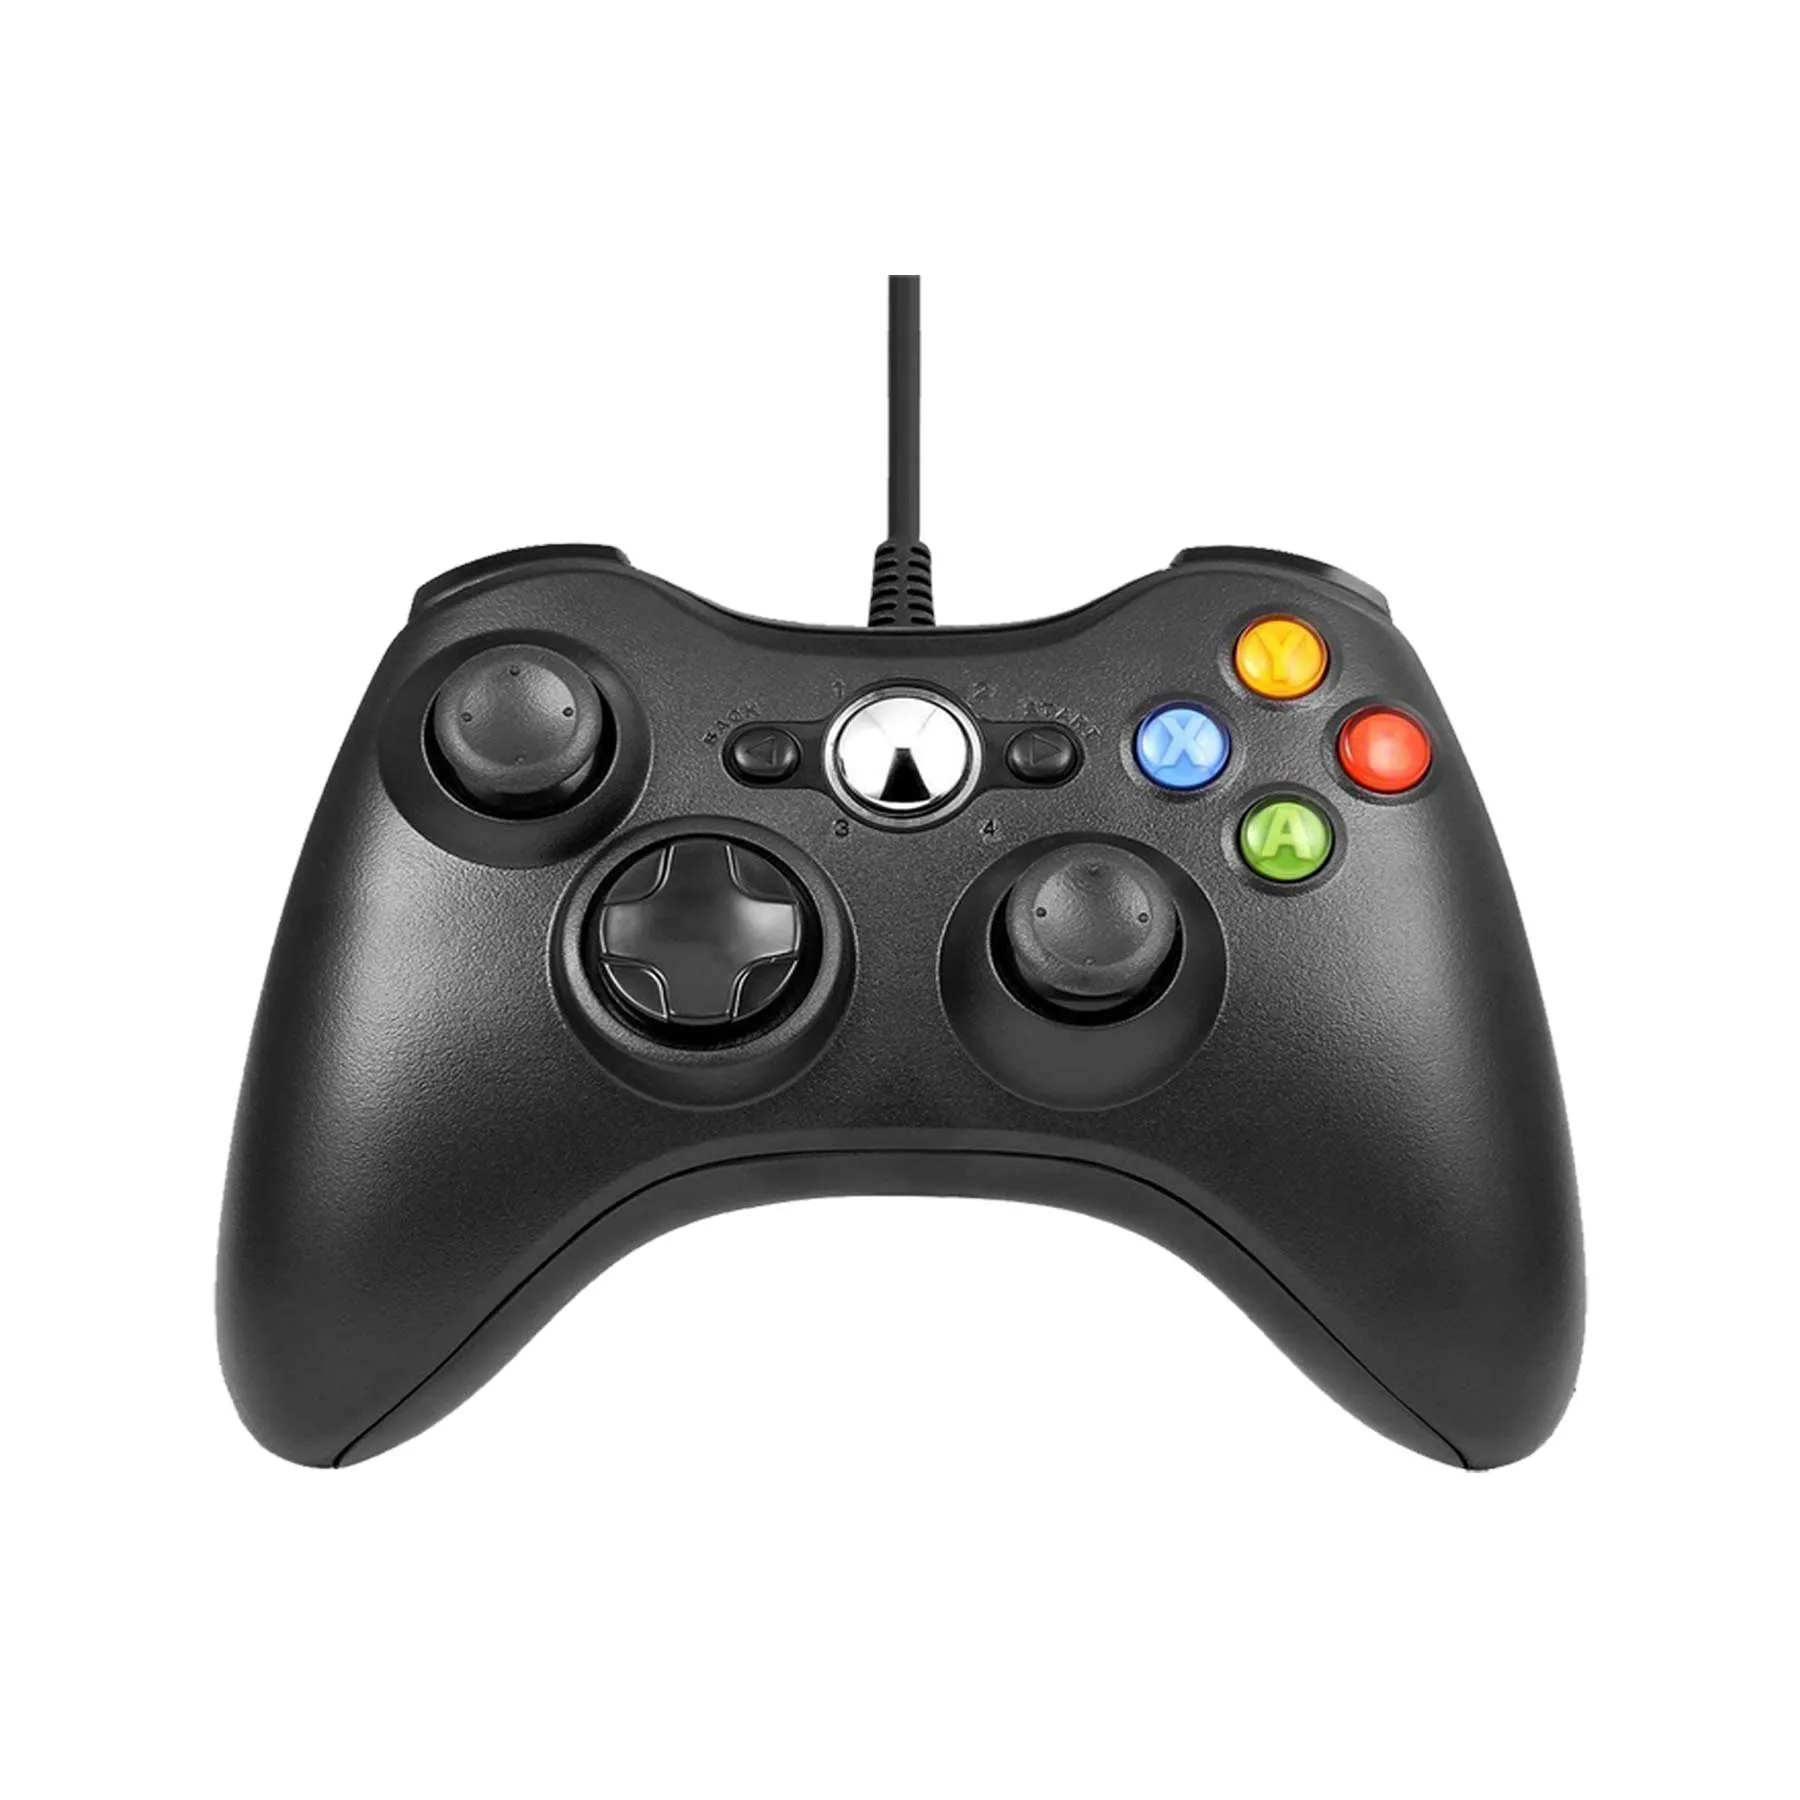 USB проводной джойстик контроллер для Xbox 360 для microsoft Xbox360 Геймпад контроллер Совместимость геймпад для ПК Windows 7 8 10 - Цвет: Black